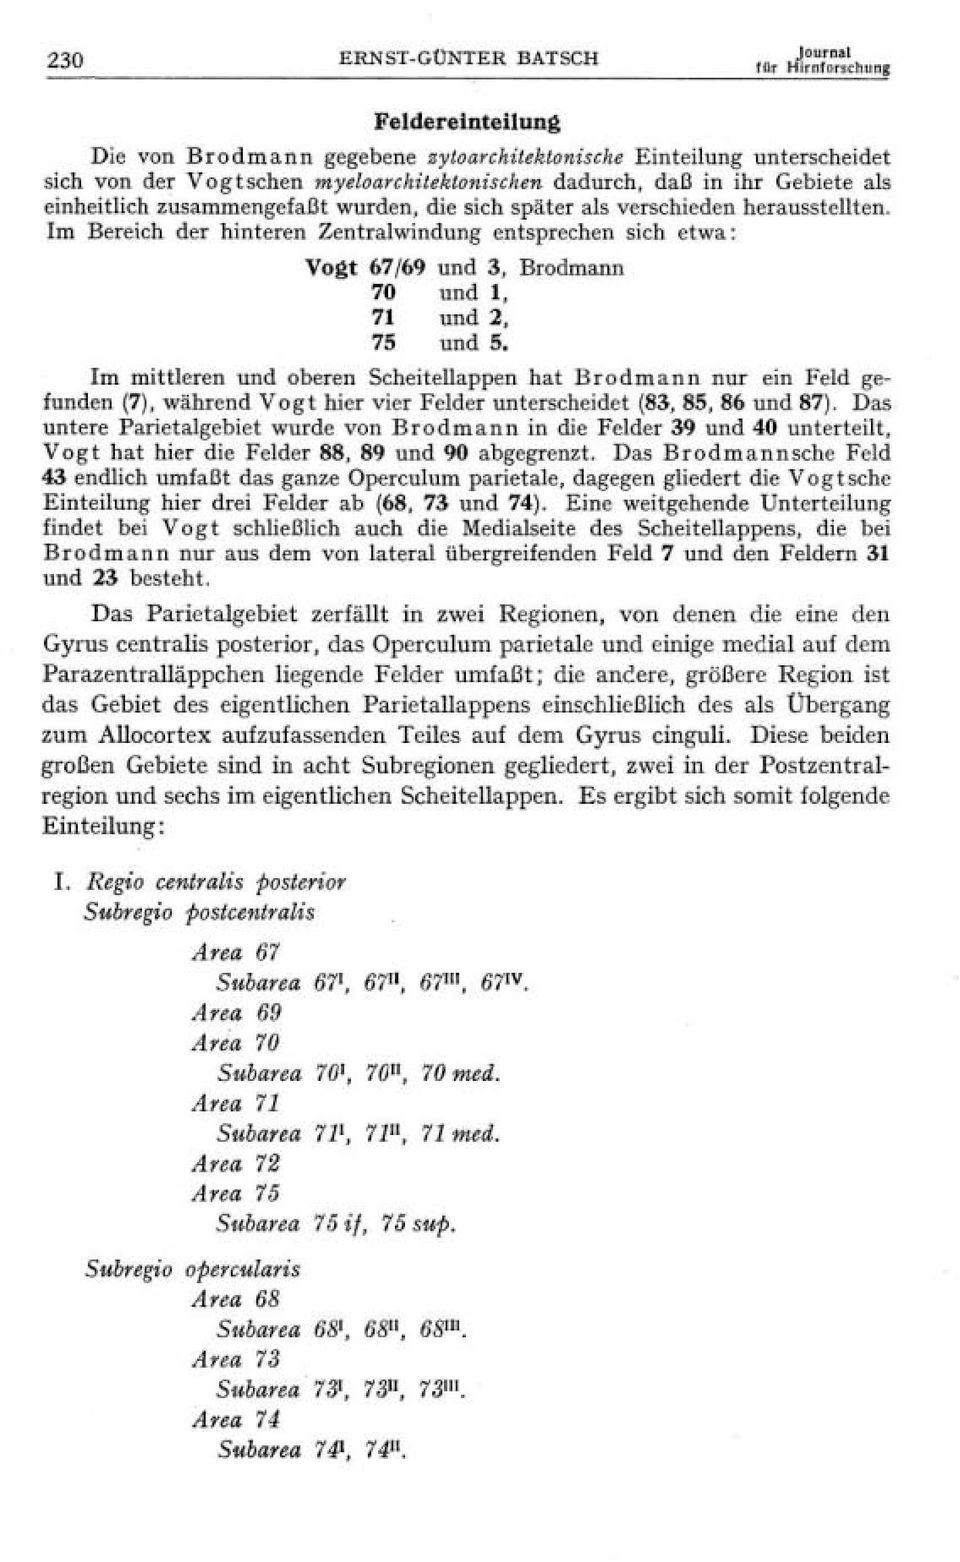 Im Bereich der hinteren Zentralwindung entsprechen sich etwa Vogt 67/69 und 3, Brodmann 70 und 1, 71 und 2, 75 und 5.